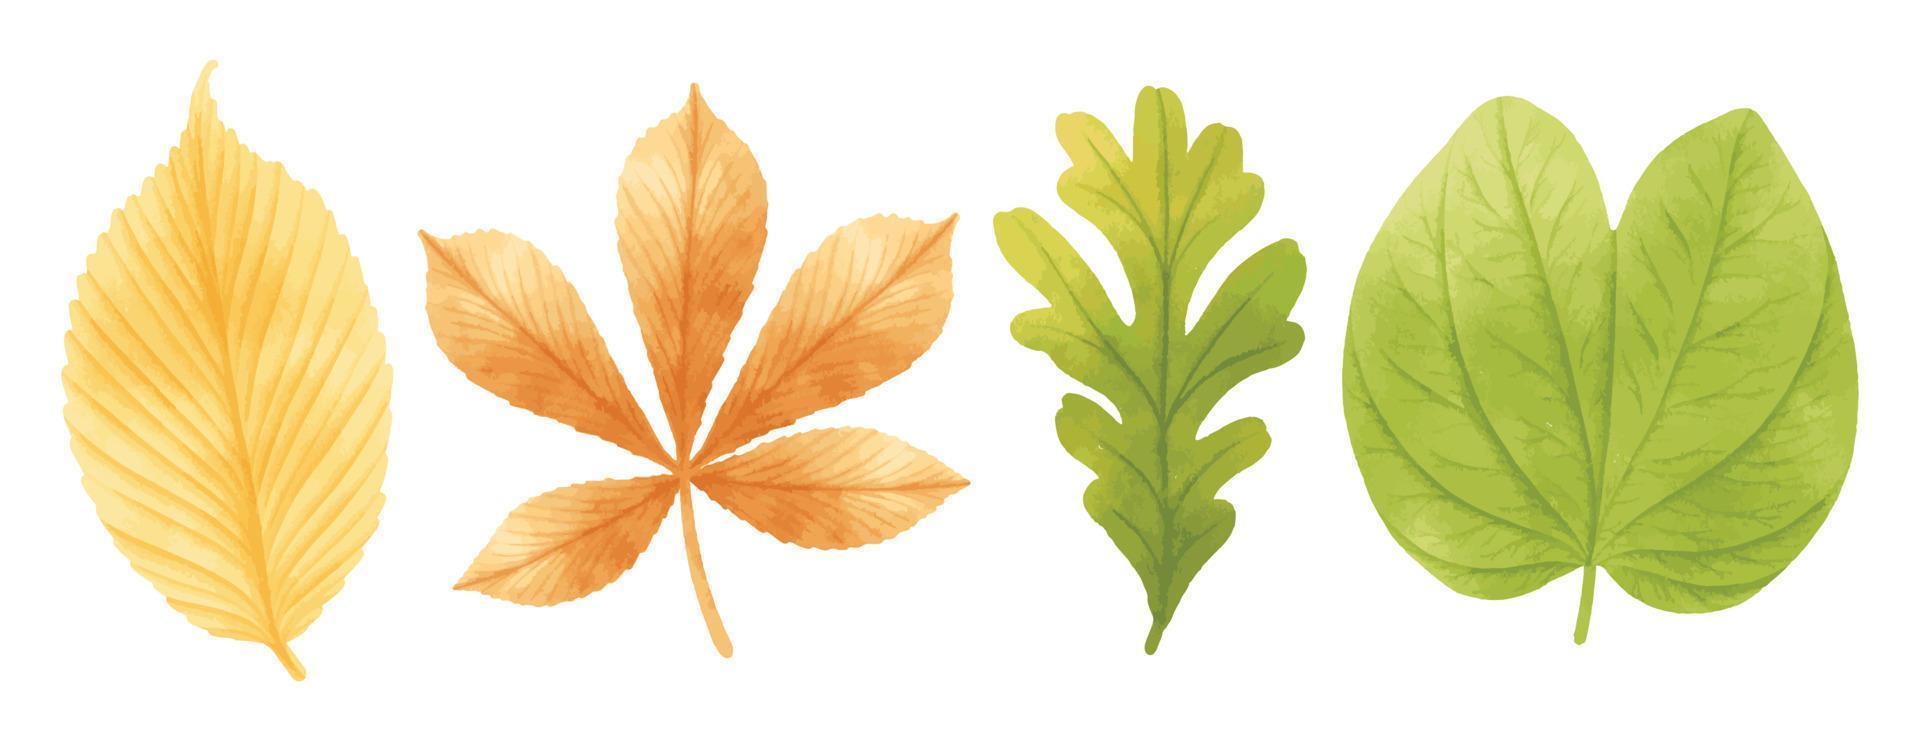 conjunto de ilustraciones de hojas de otoño estilos de acuarela vector